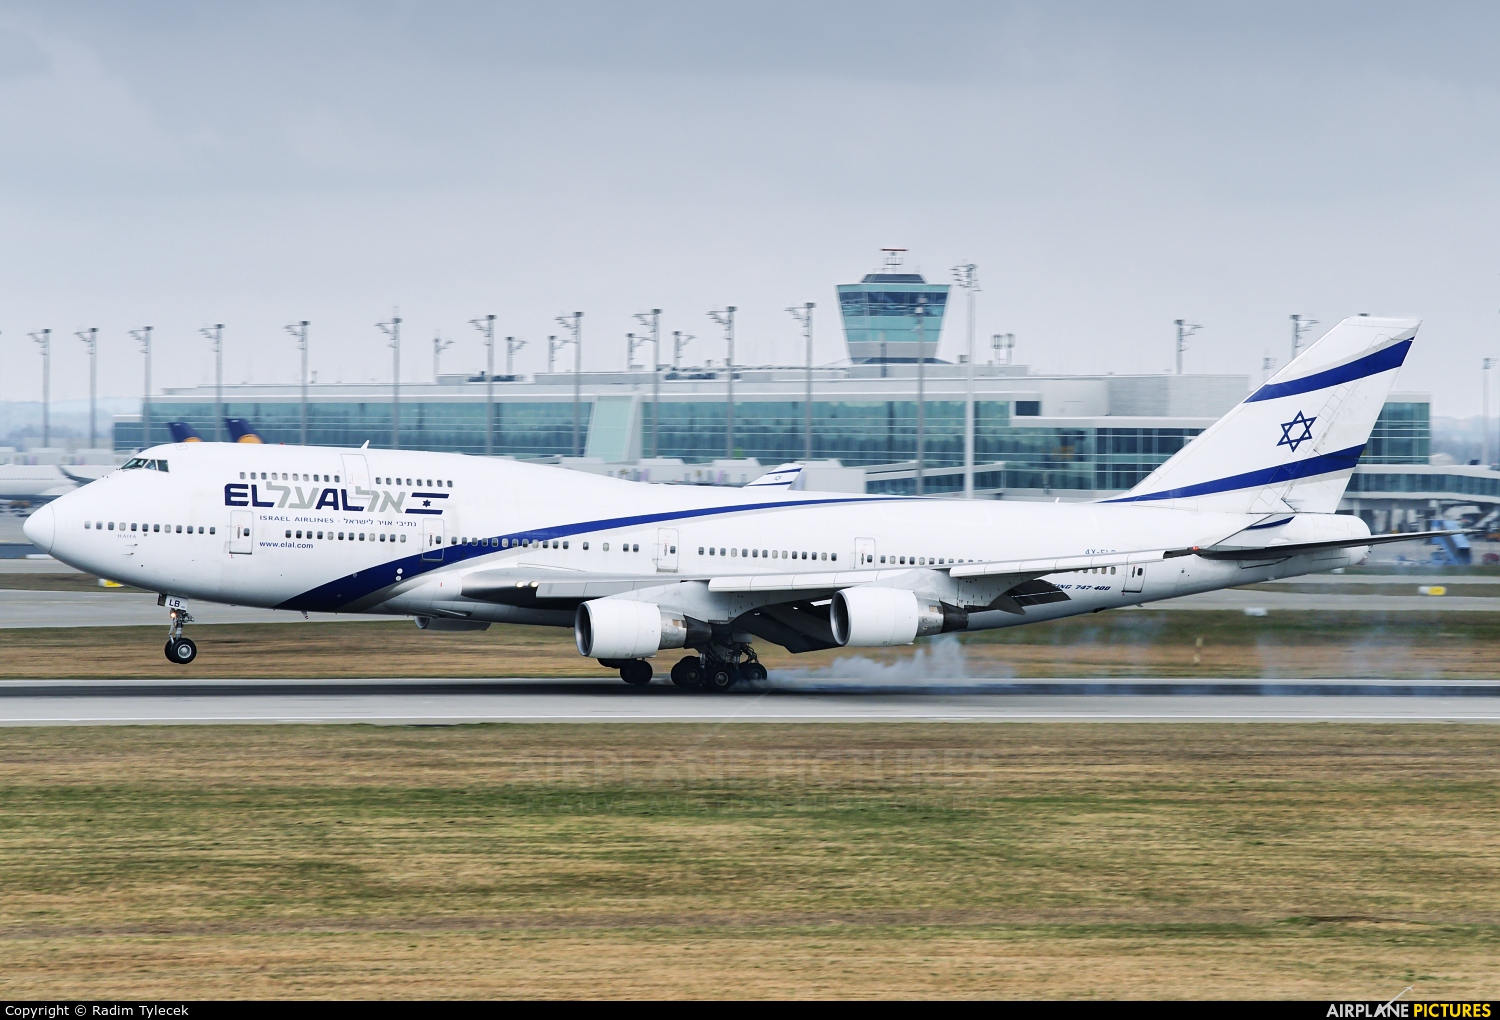 El Al Israel Airlines 4X-ELB aircraft at Munich